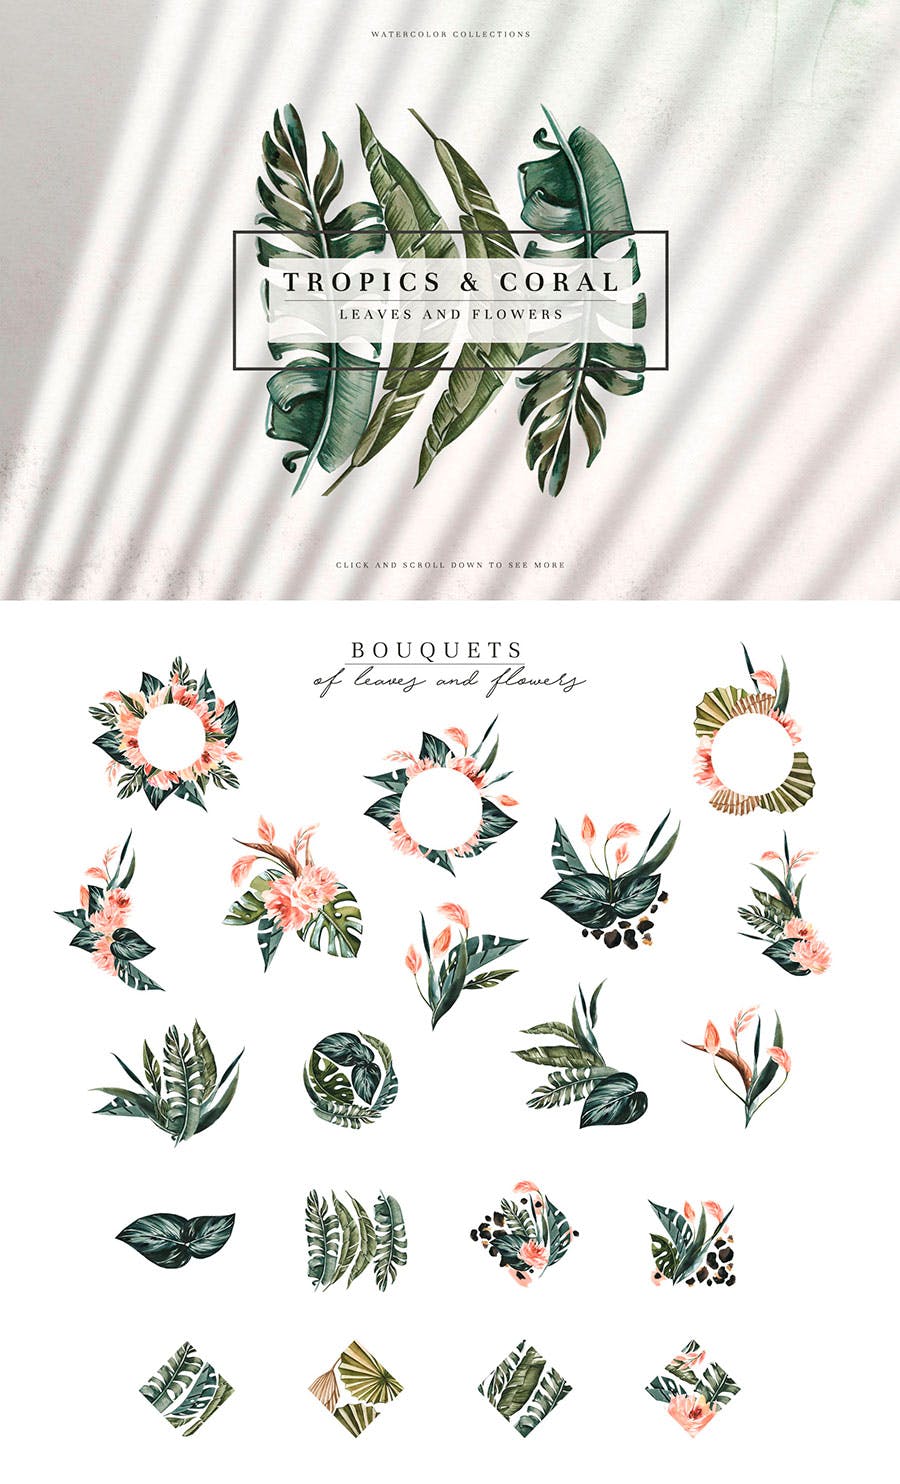 热带植物水彩手绘图案设计素材套装 Tropics & Coral Watercolor Set插图7